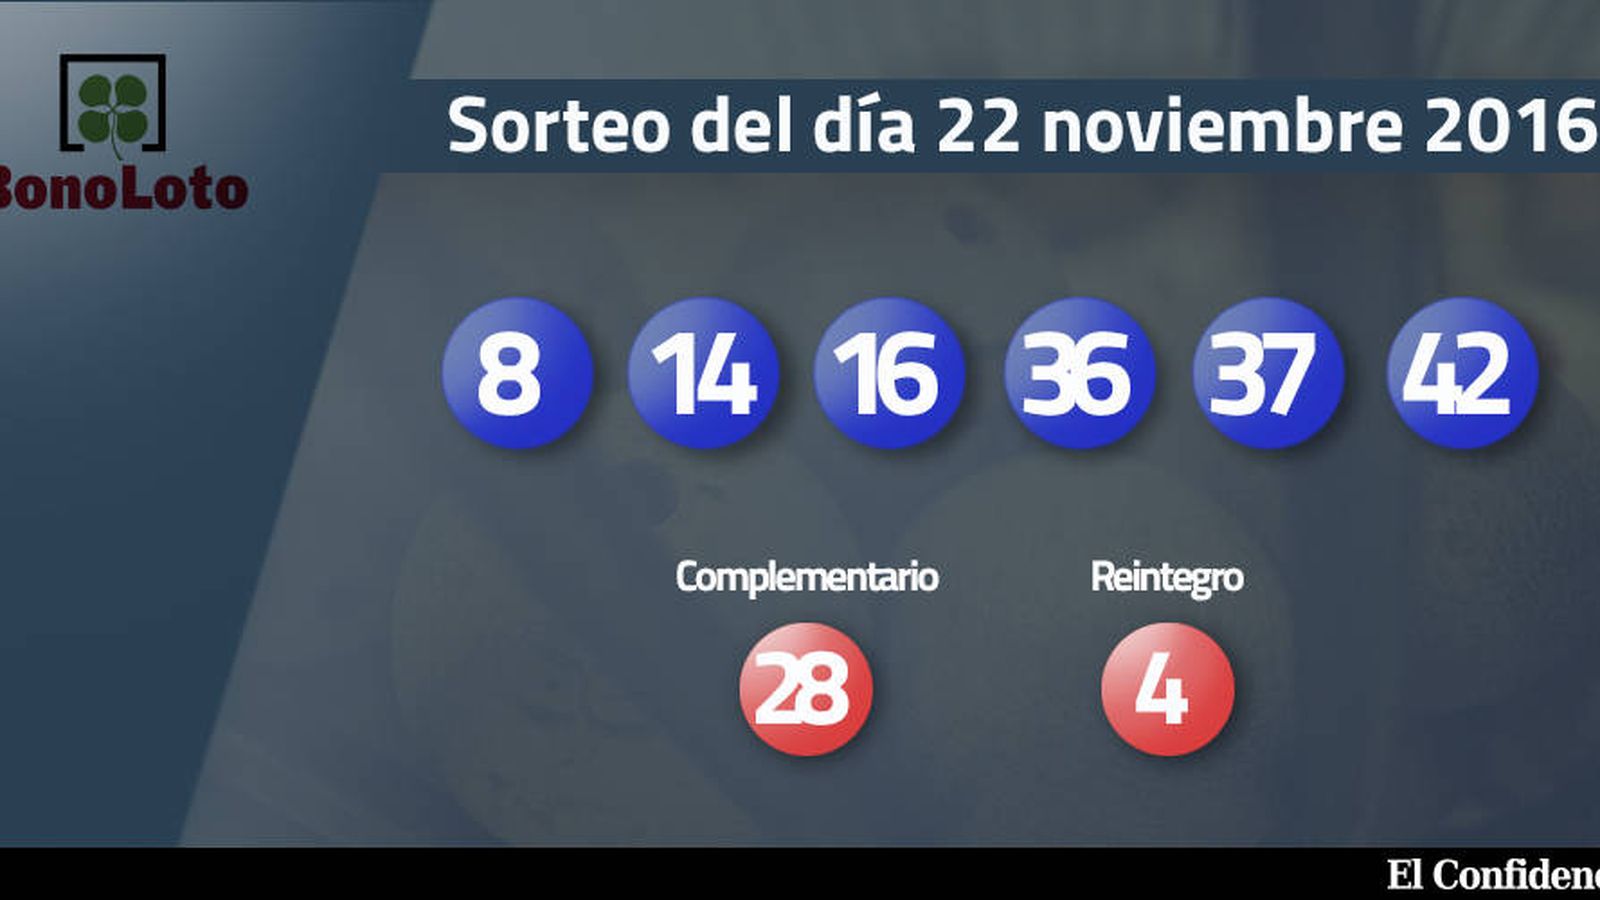 Foto: Resultados del sorteo de la Bonoloto del 22 noviembre 2016 (EC)